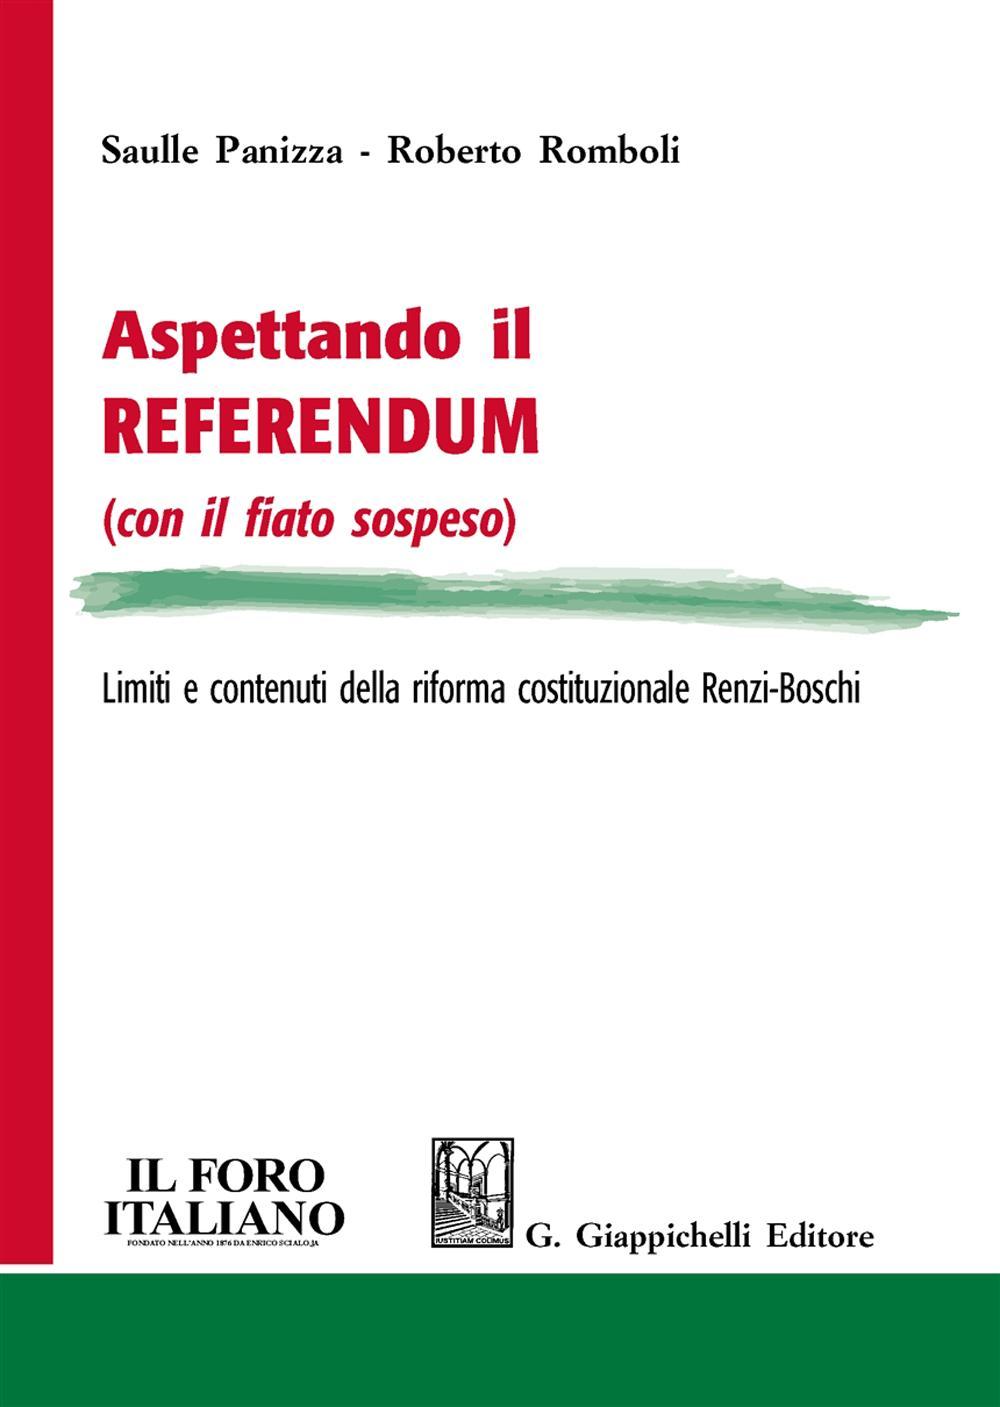 Aspettando il referendum (con il fiato sospeso). Limiti e contenuti della riforma costituzionale Renzi-Boschi